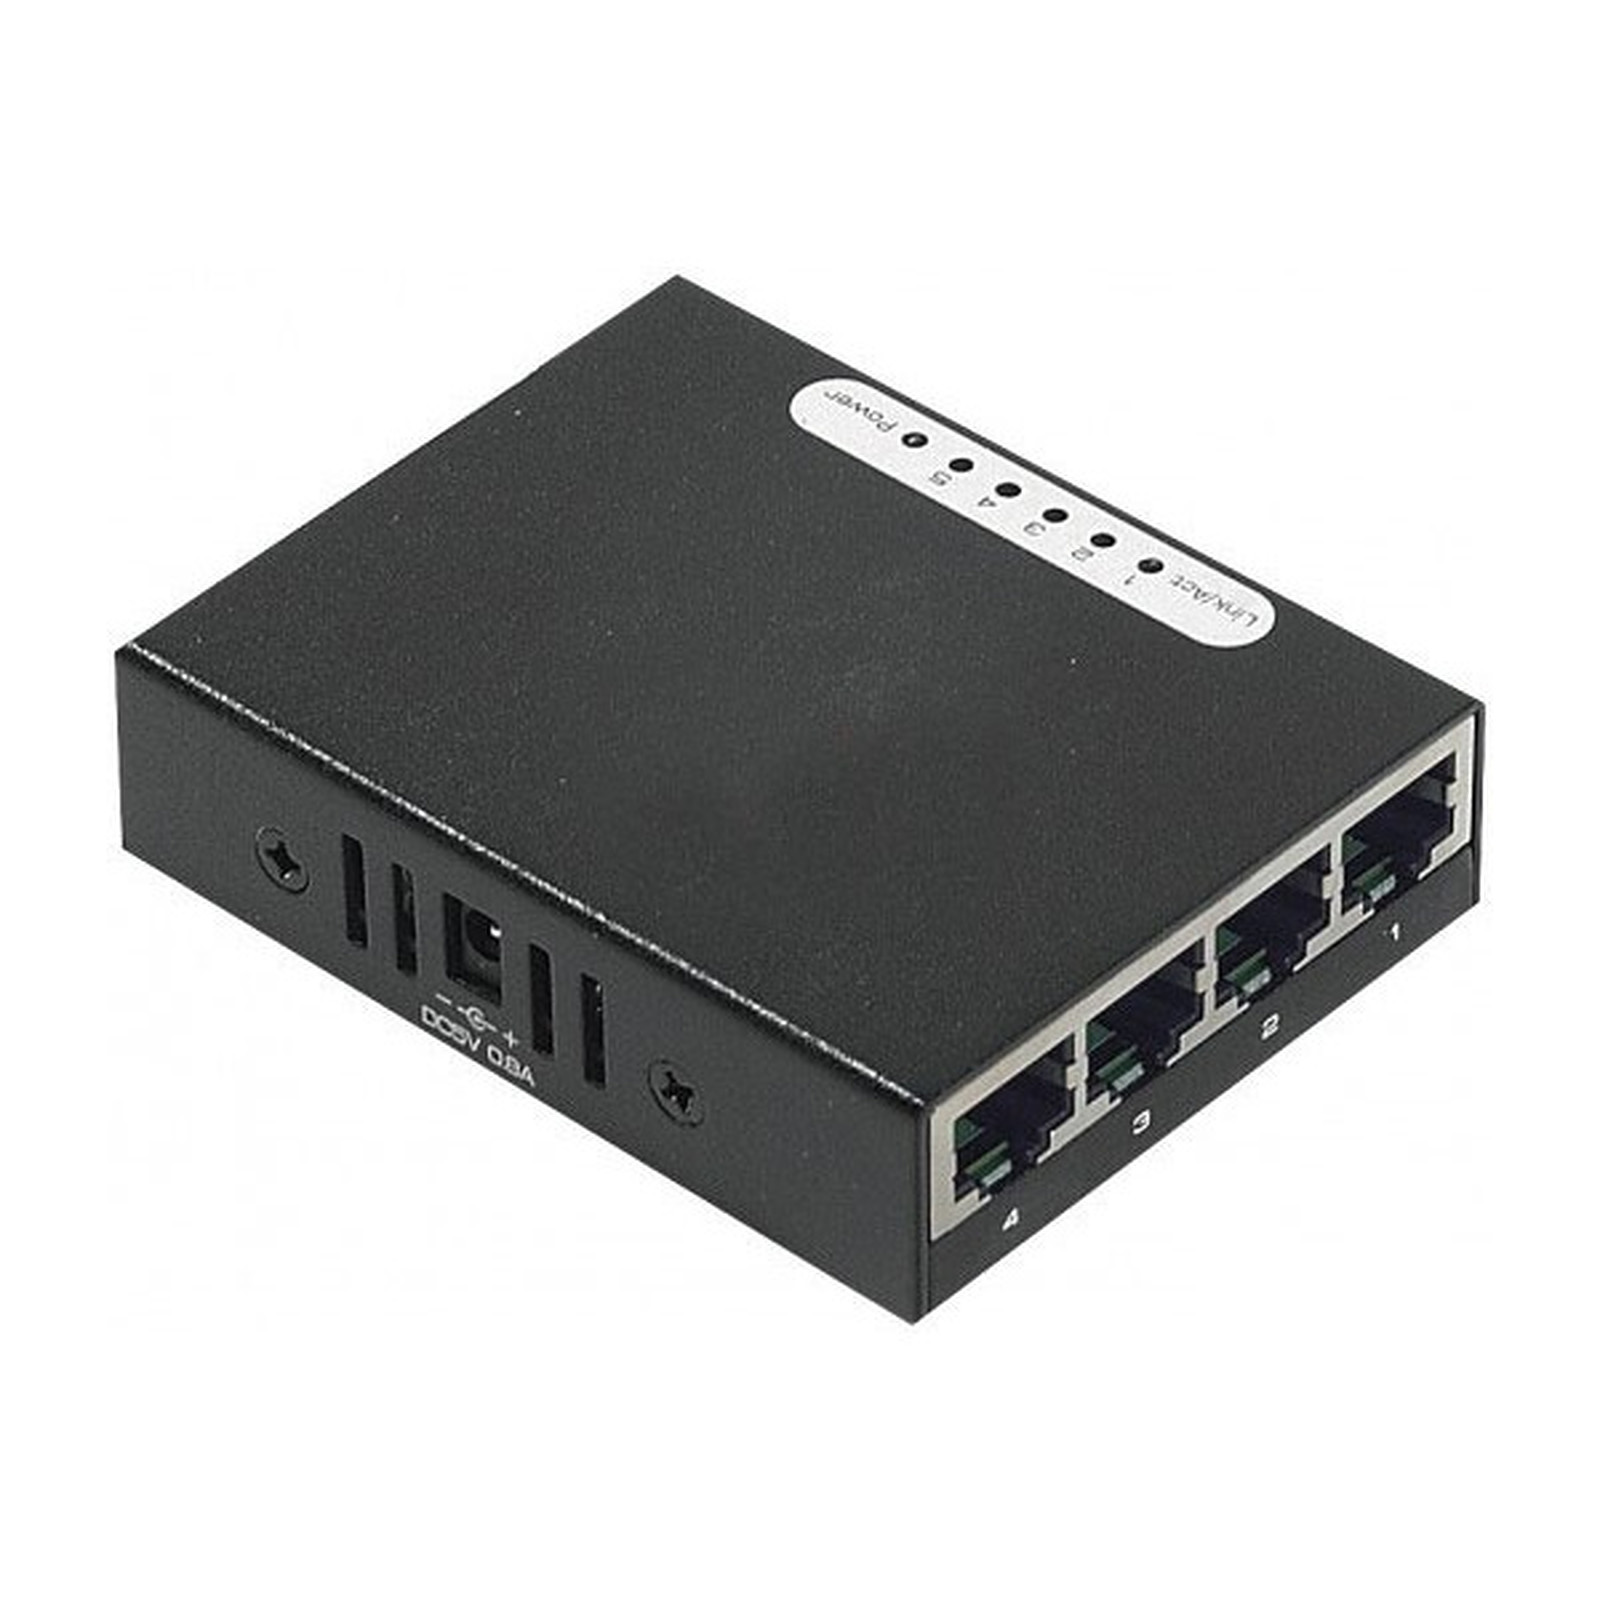 Mini switch auto-alimente par USB (5 ports Fast Ethernet) - Switch Generique